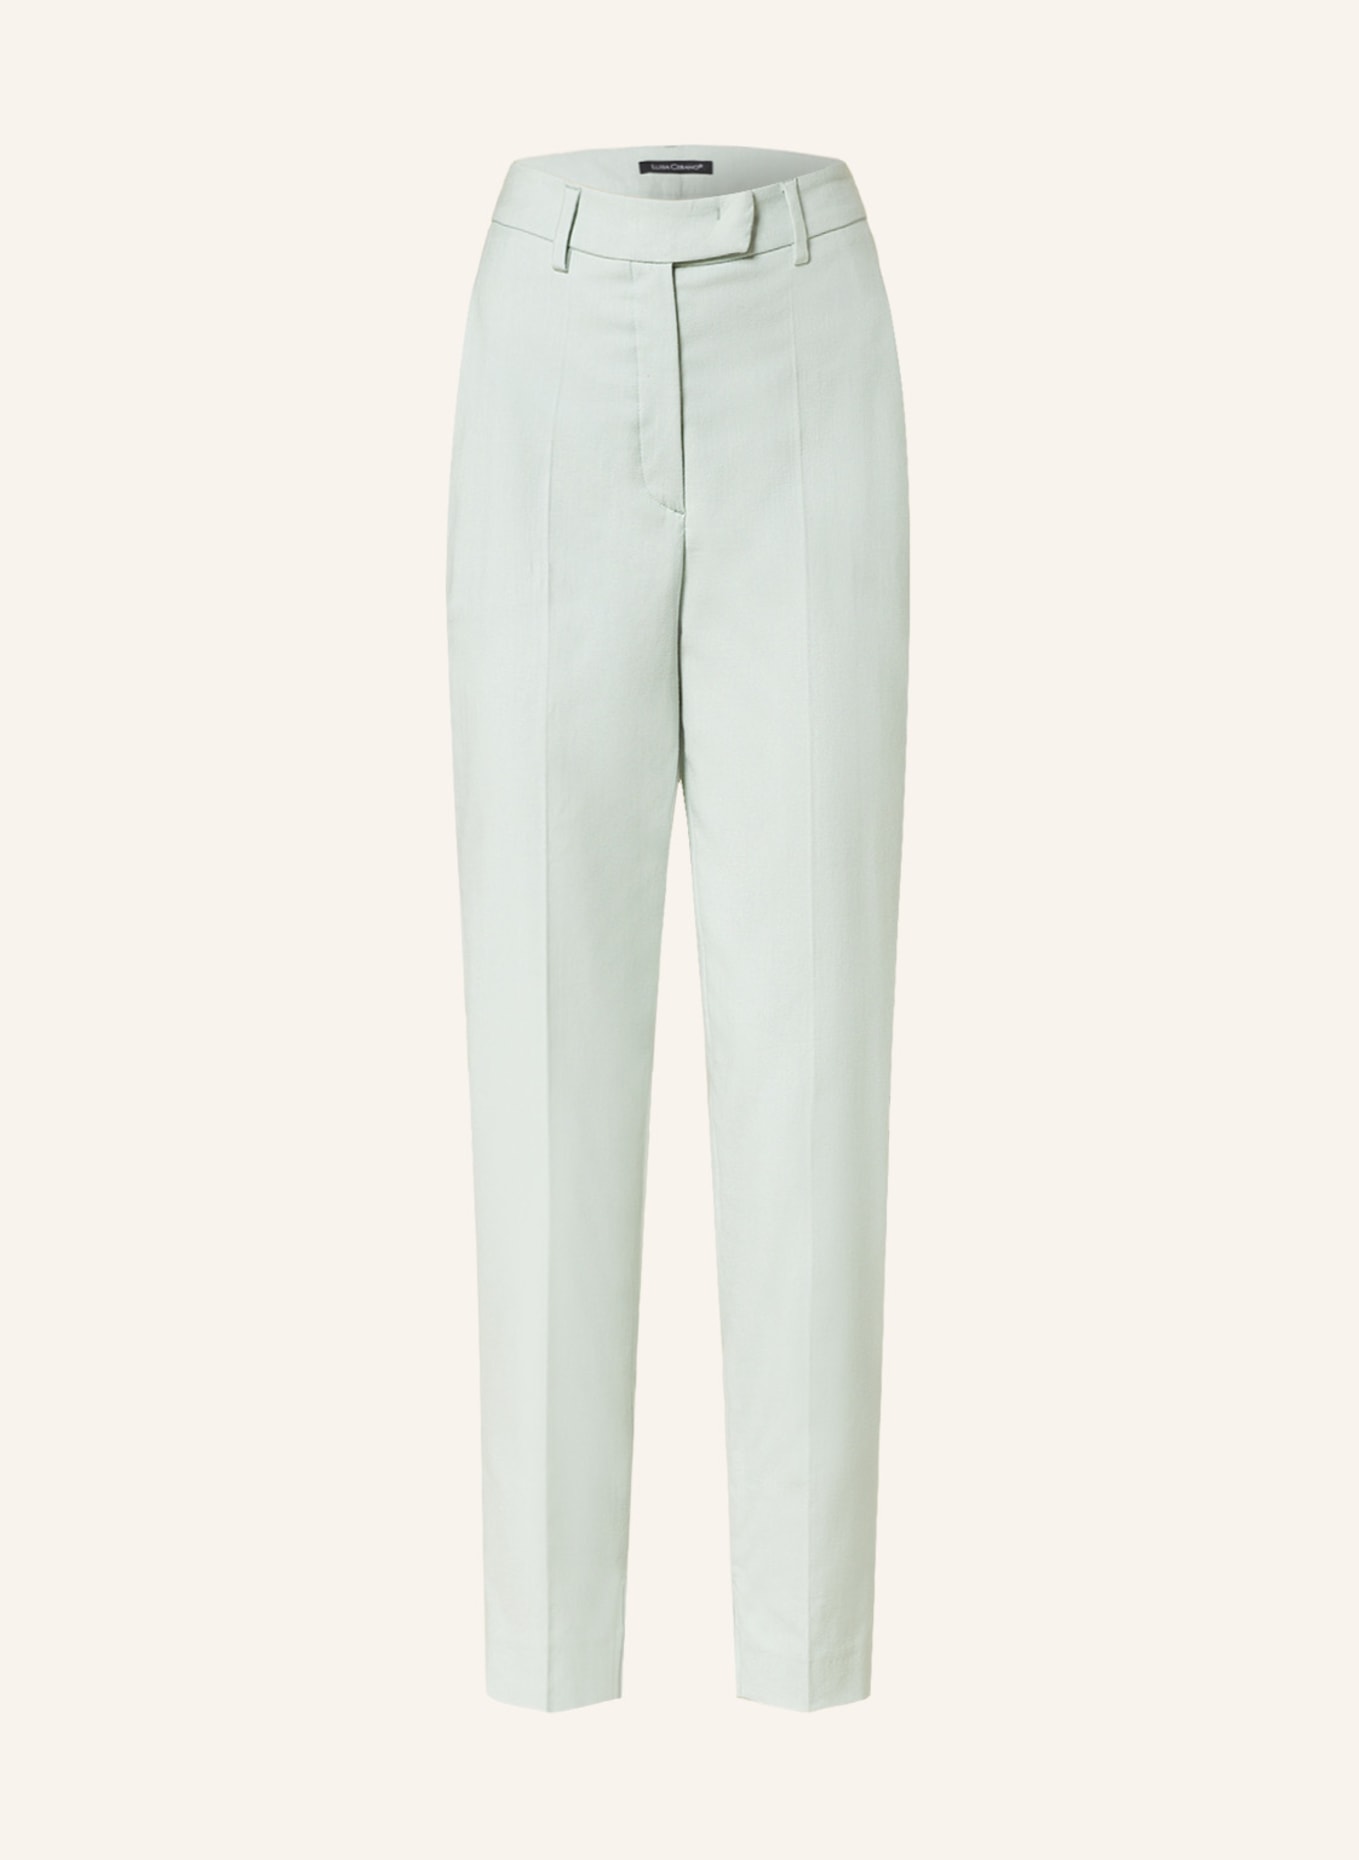 LUISA CERANO 7/8 pants, Color: MINT (Image 1)